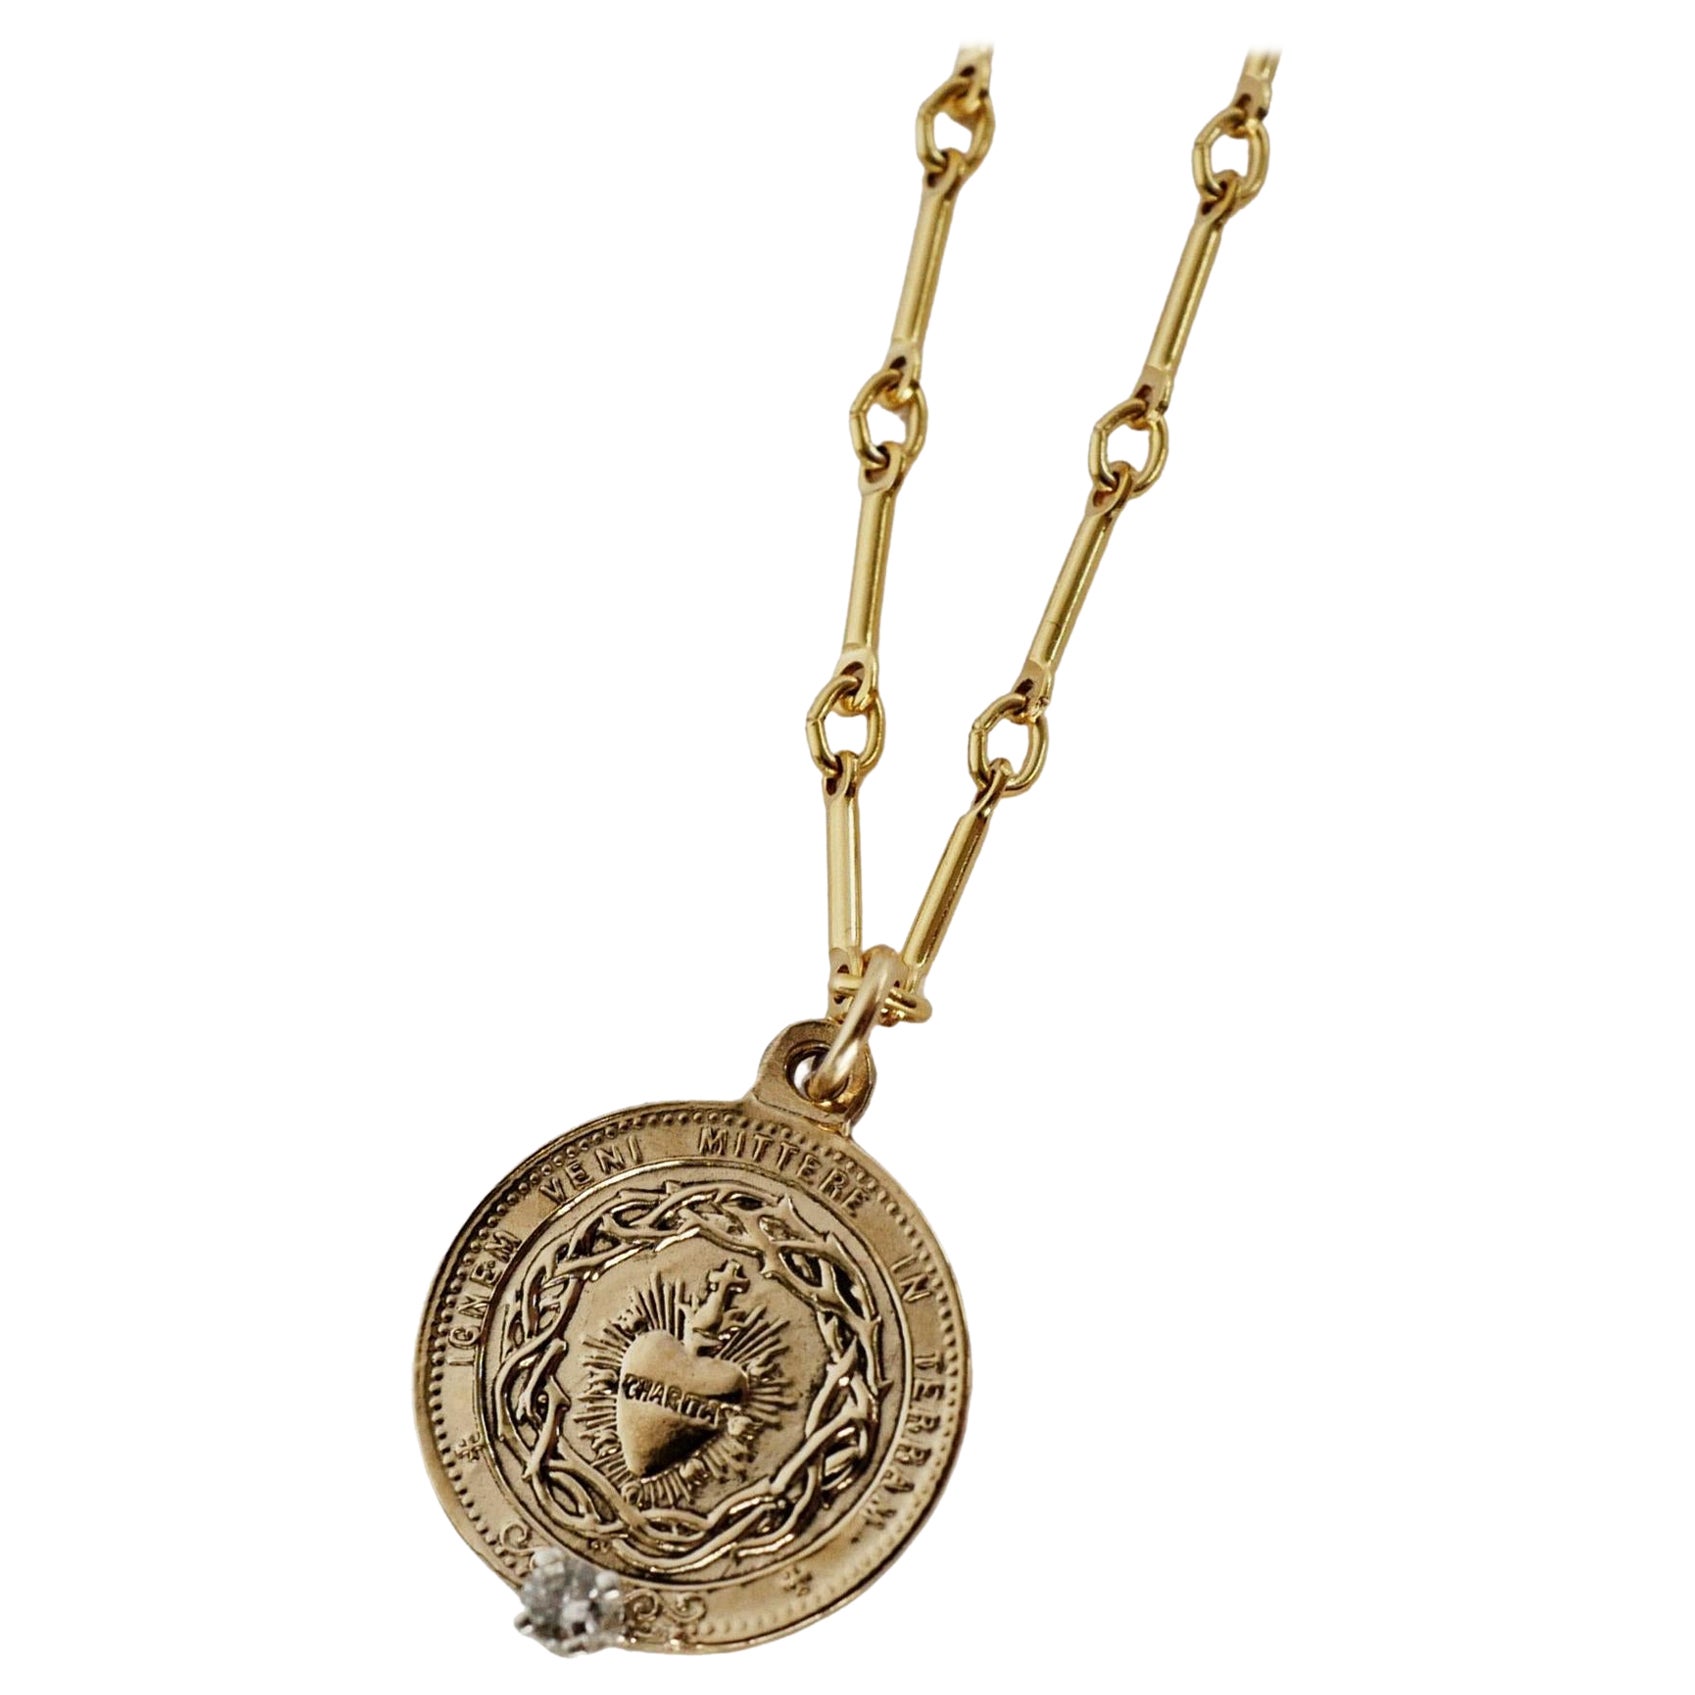 Weißer Diamant Heiliges Herz Münze Medaille Anhänger Kette Halskette
Gold-Vermeil-Anhänger und Gold-gefüllte Kette
22